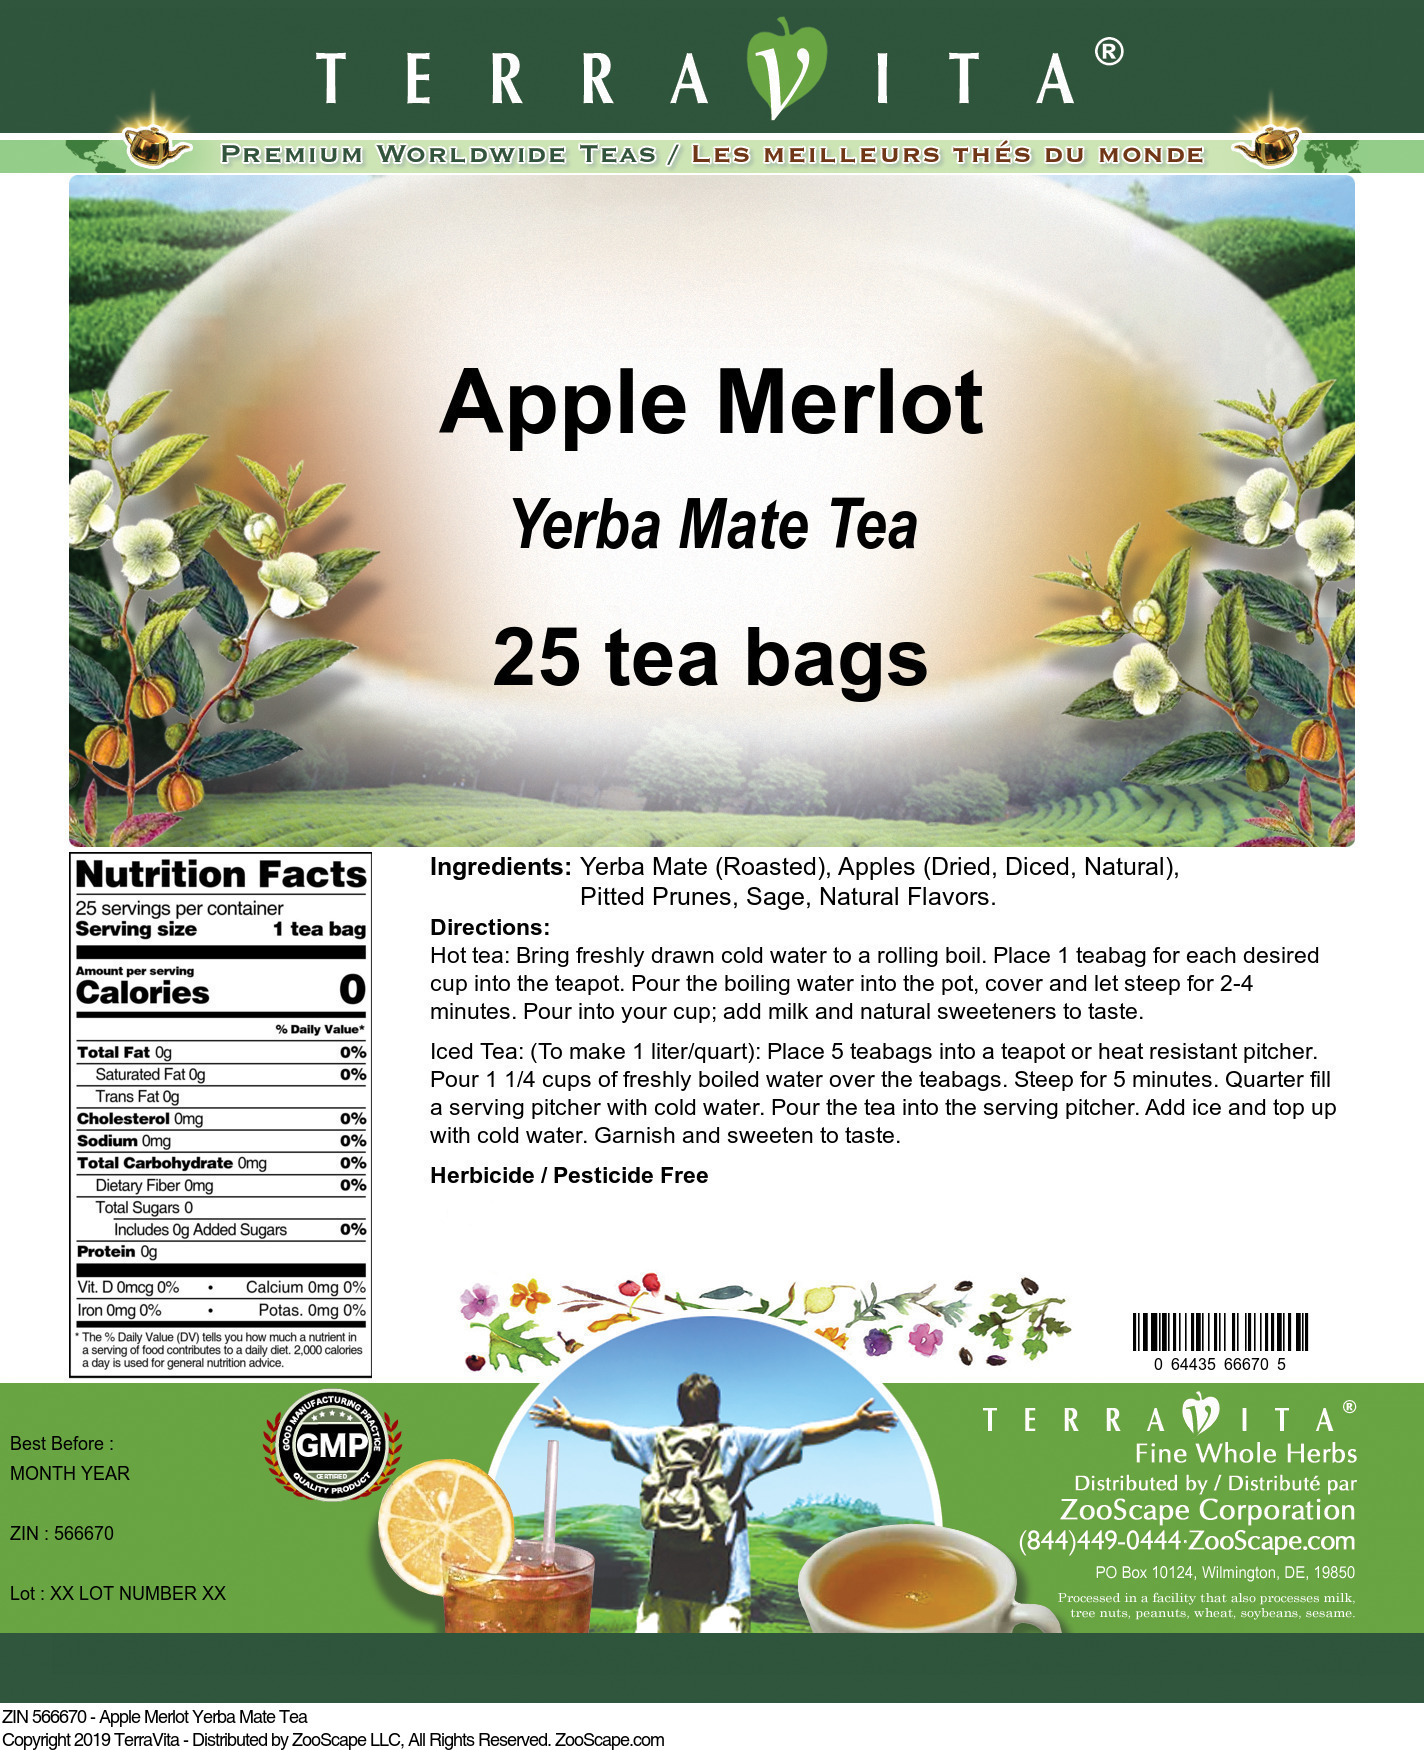 Apple Merlot Yerba Mate Tea - Label